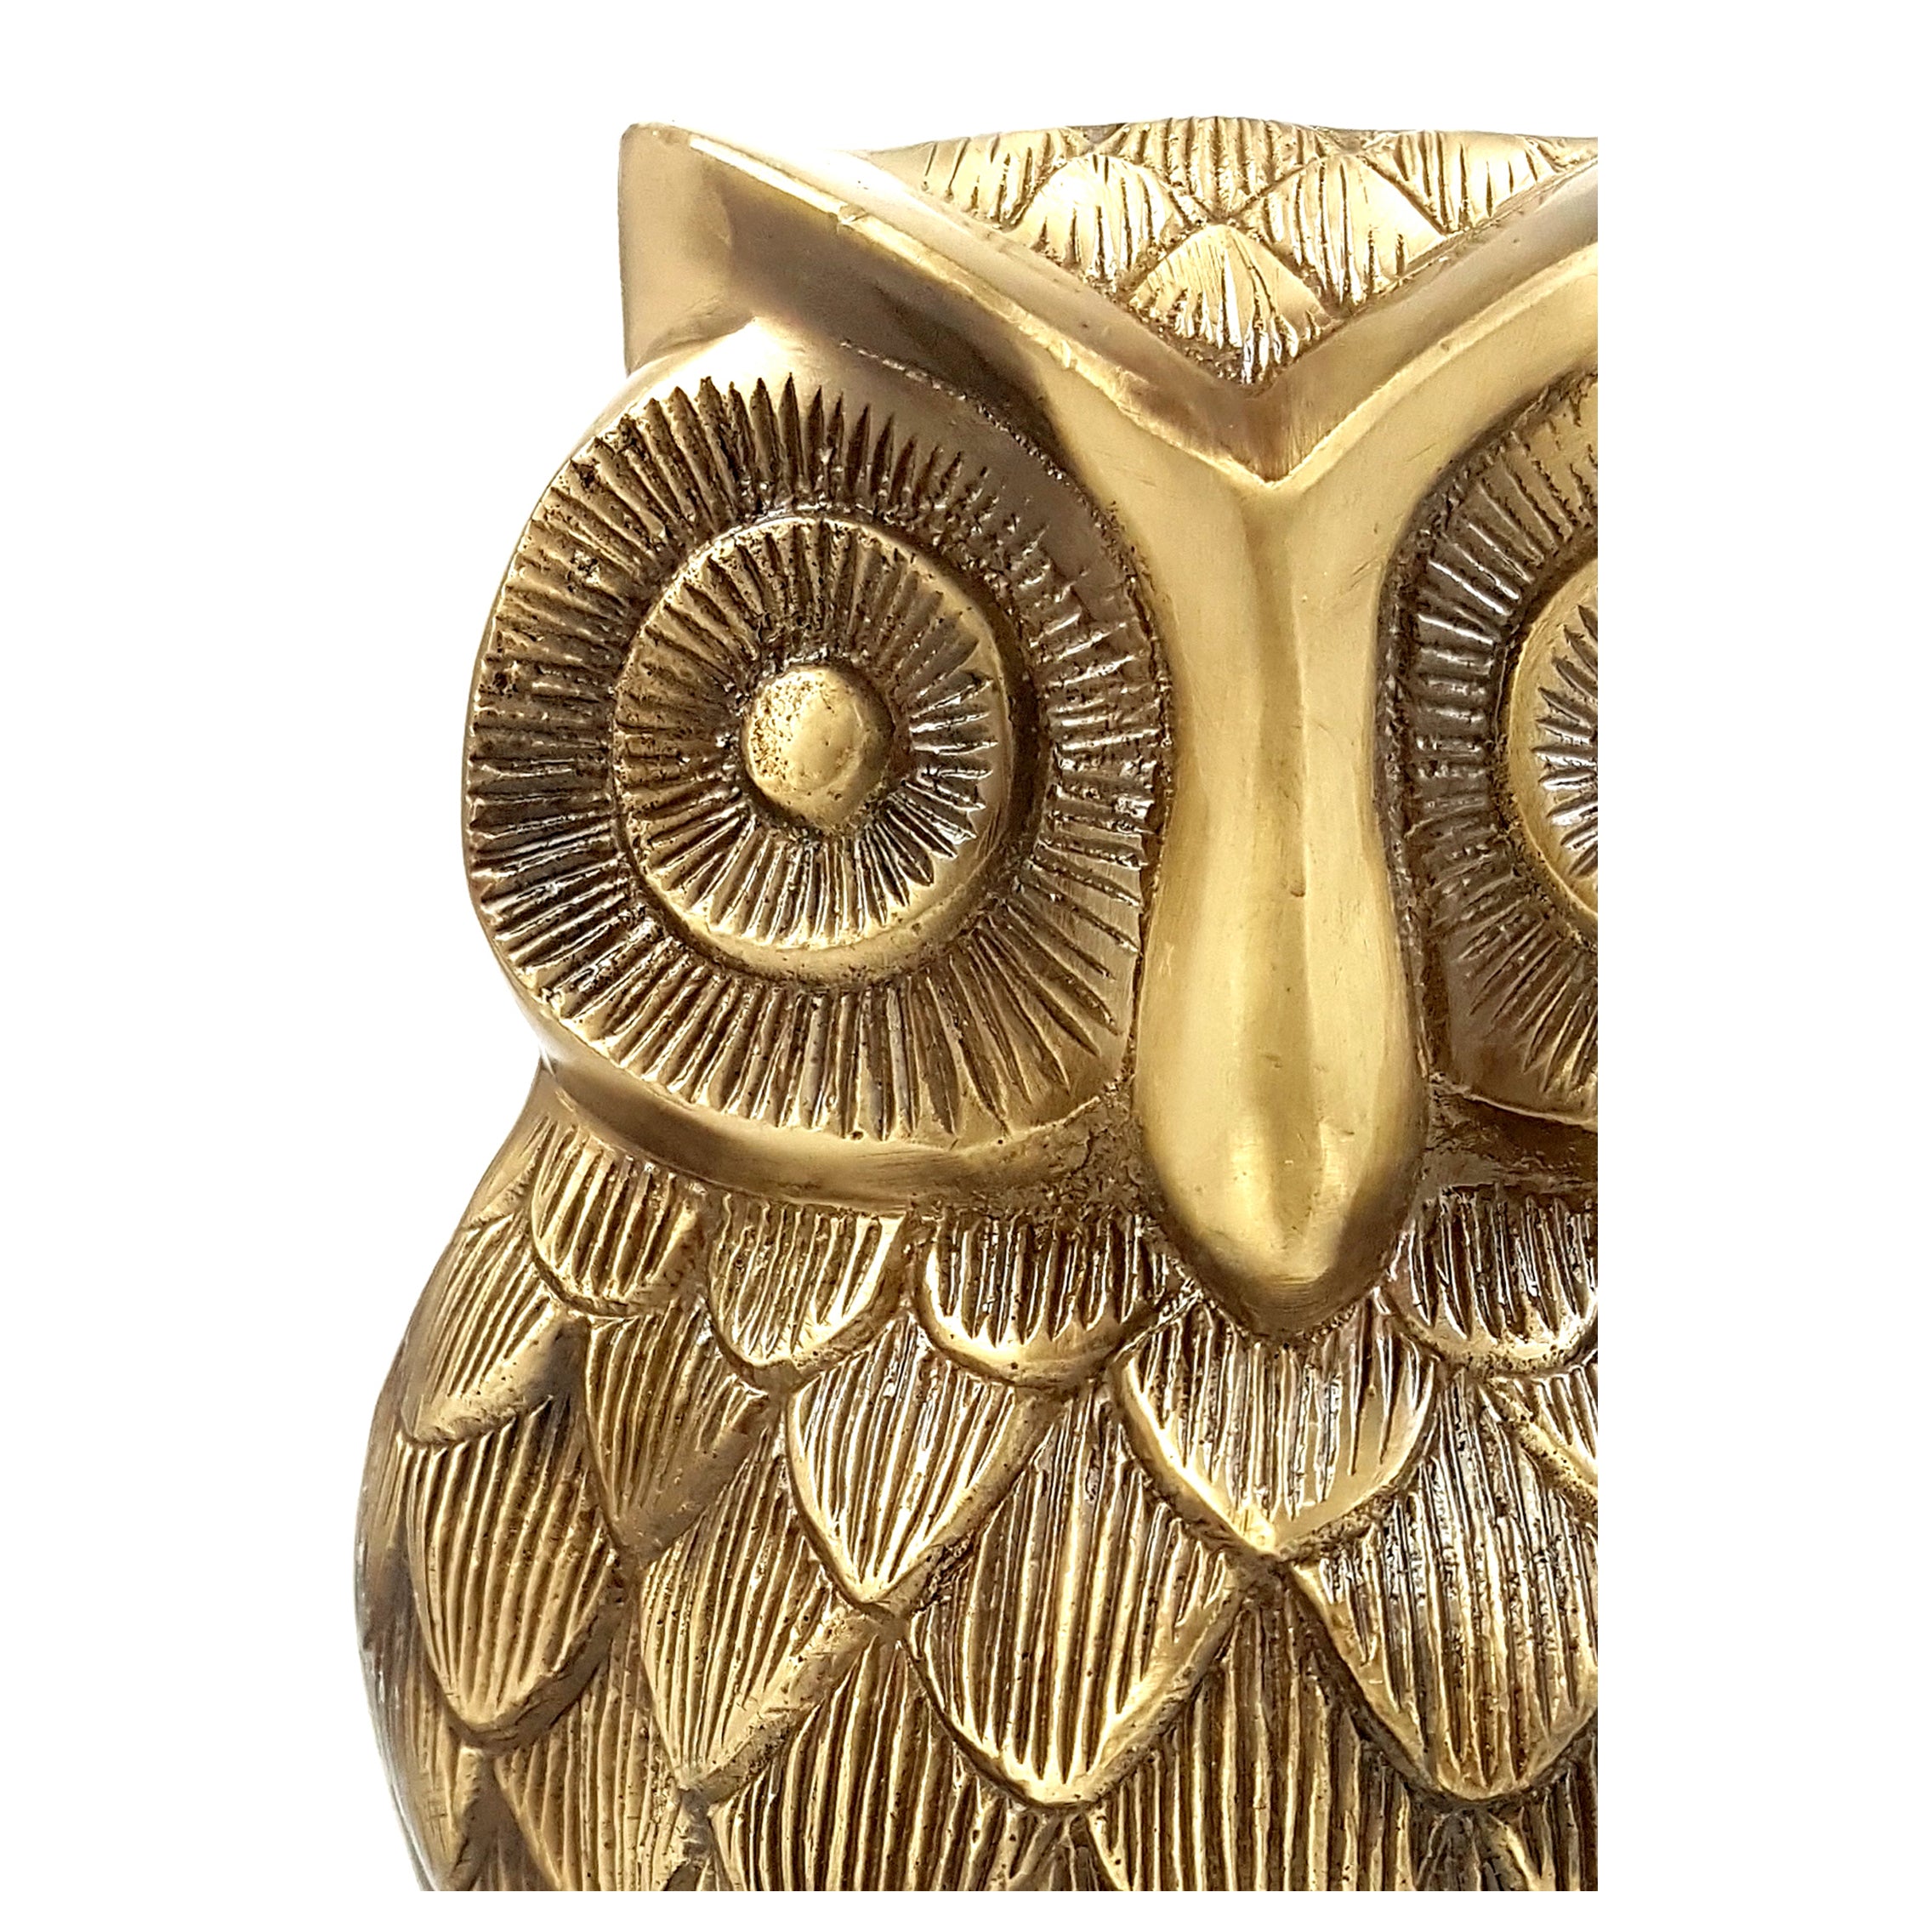 Brass Vintage Owl 8 Inches Showpiece Figurine